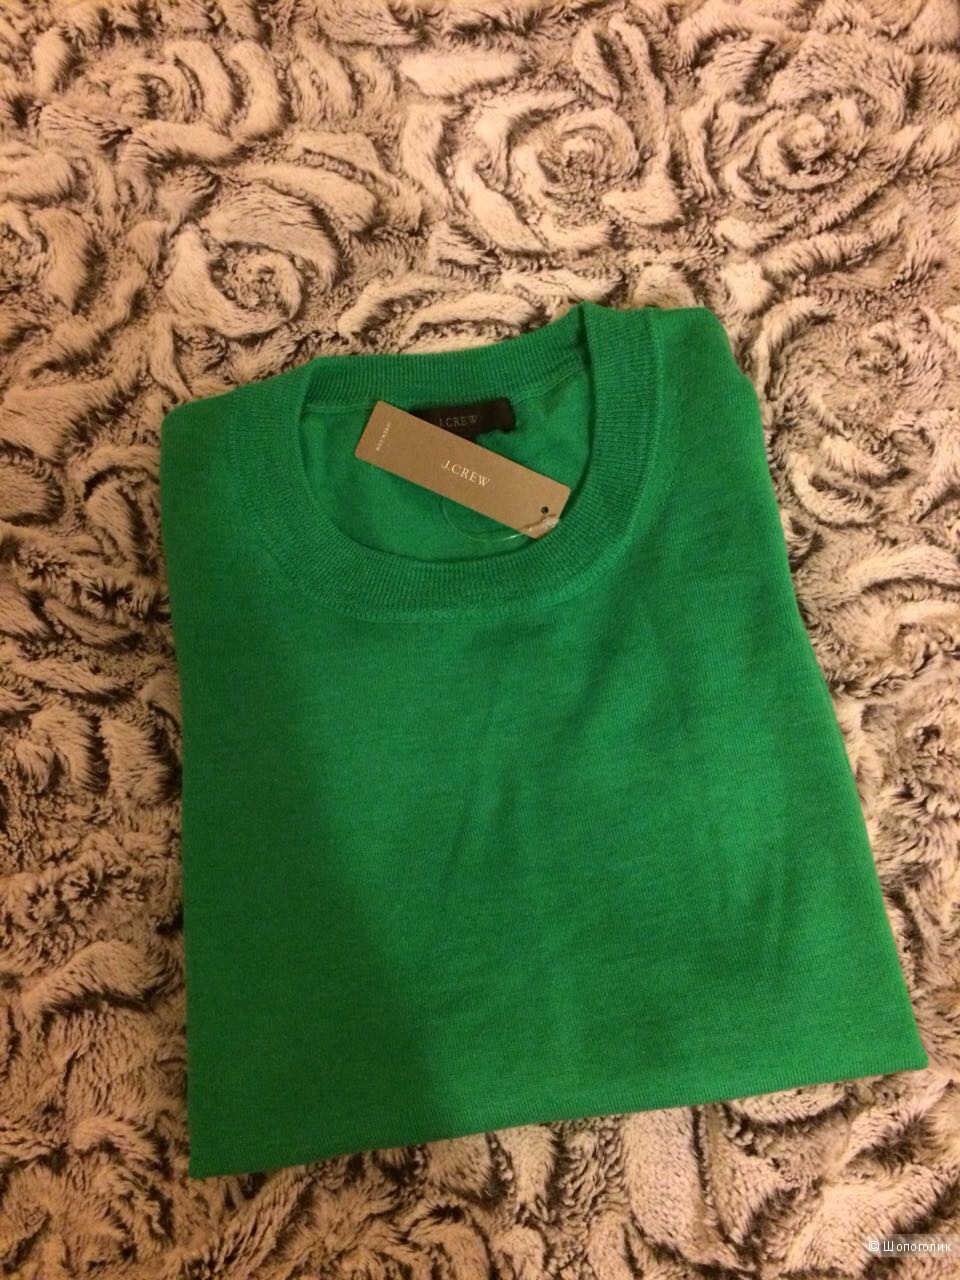 Зелёный свитер jcrew xs-s шерсть мериноса